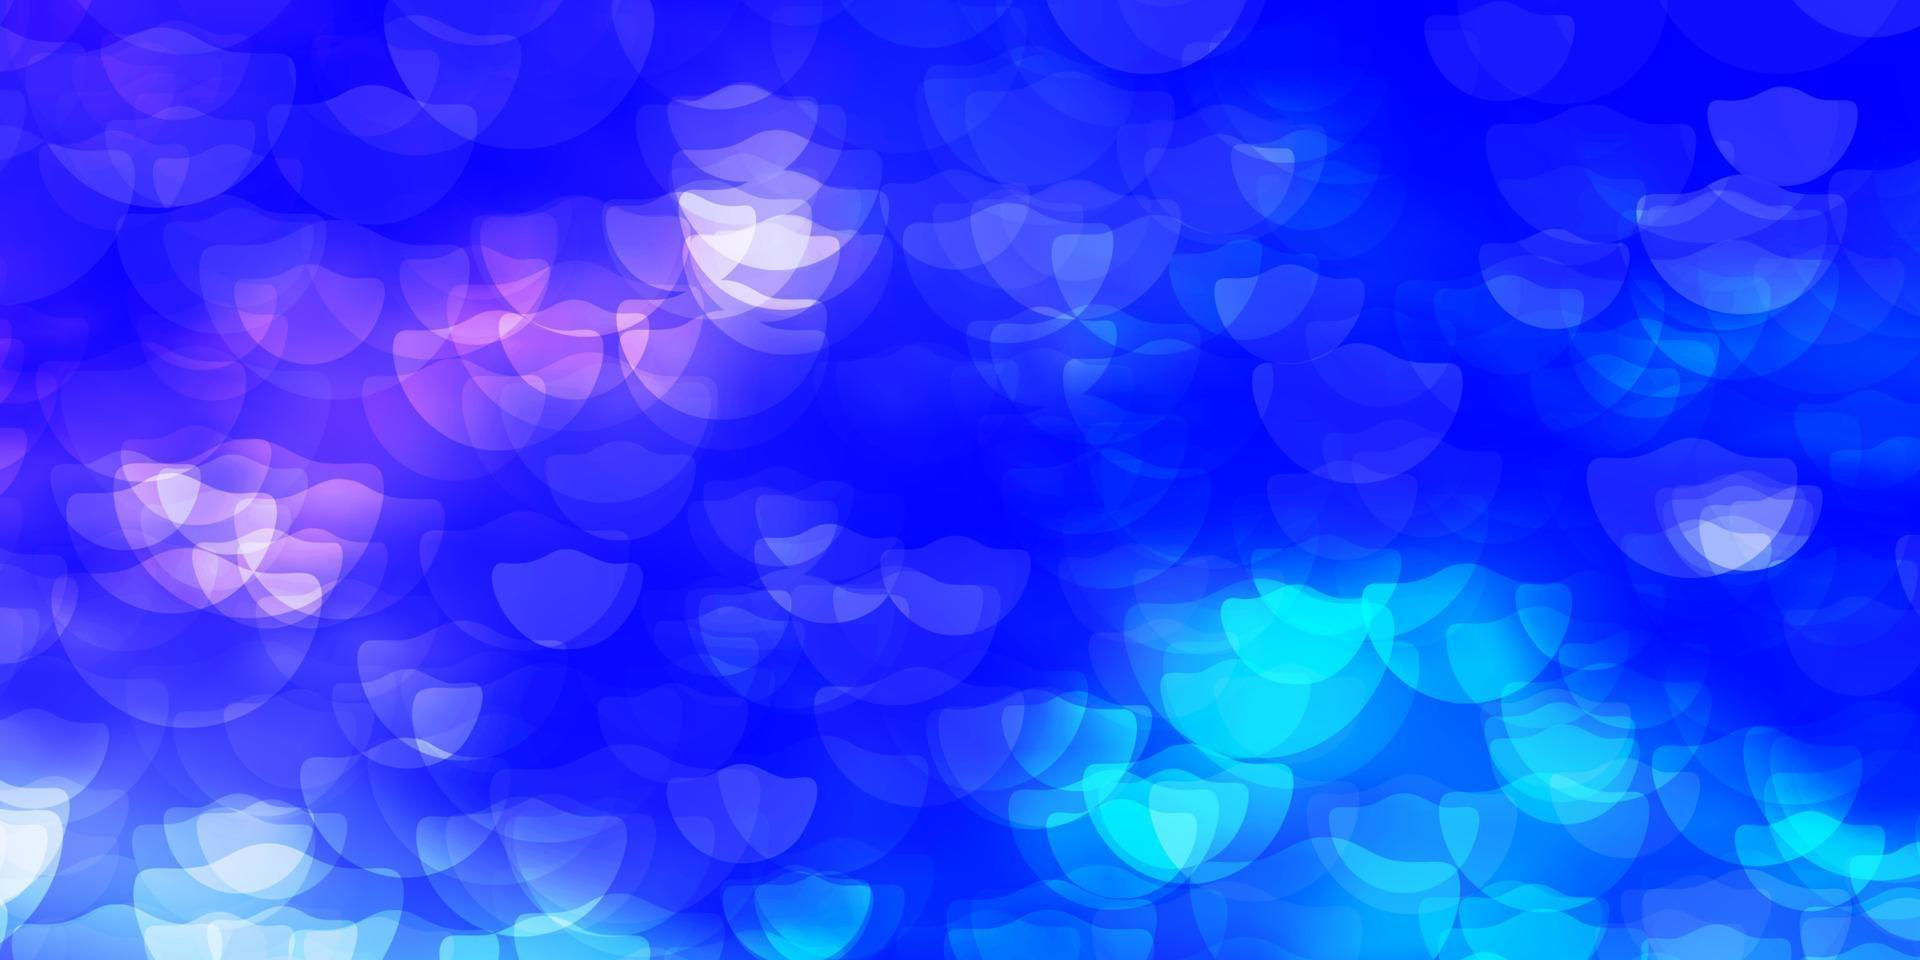 ljusrosa, blå vektorbakgrund med fläckar. vektor